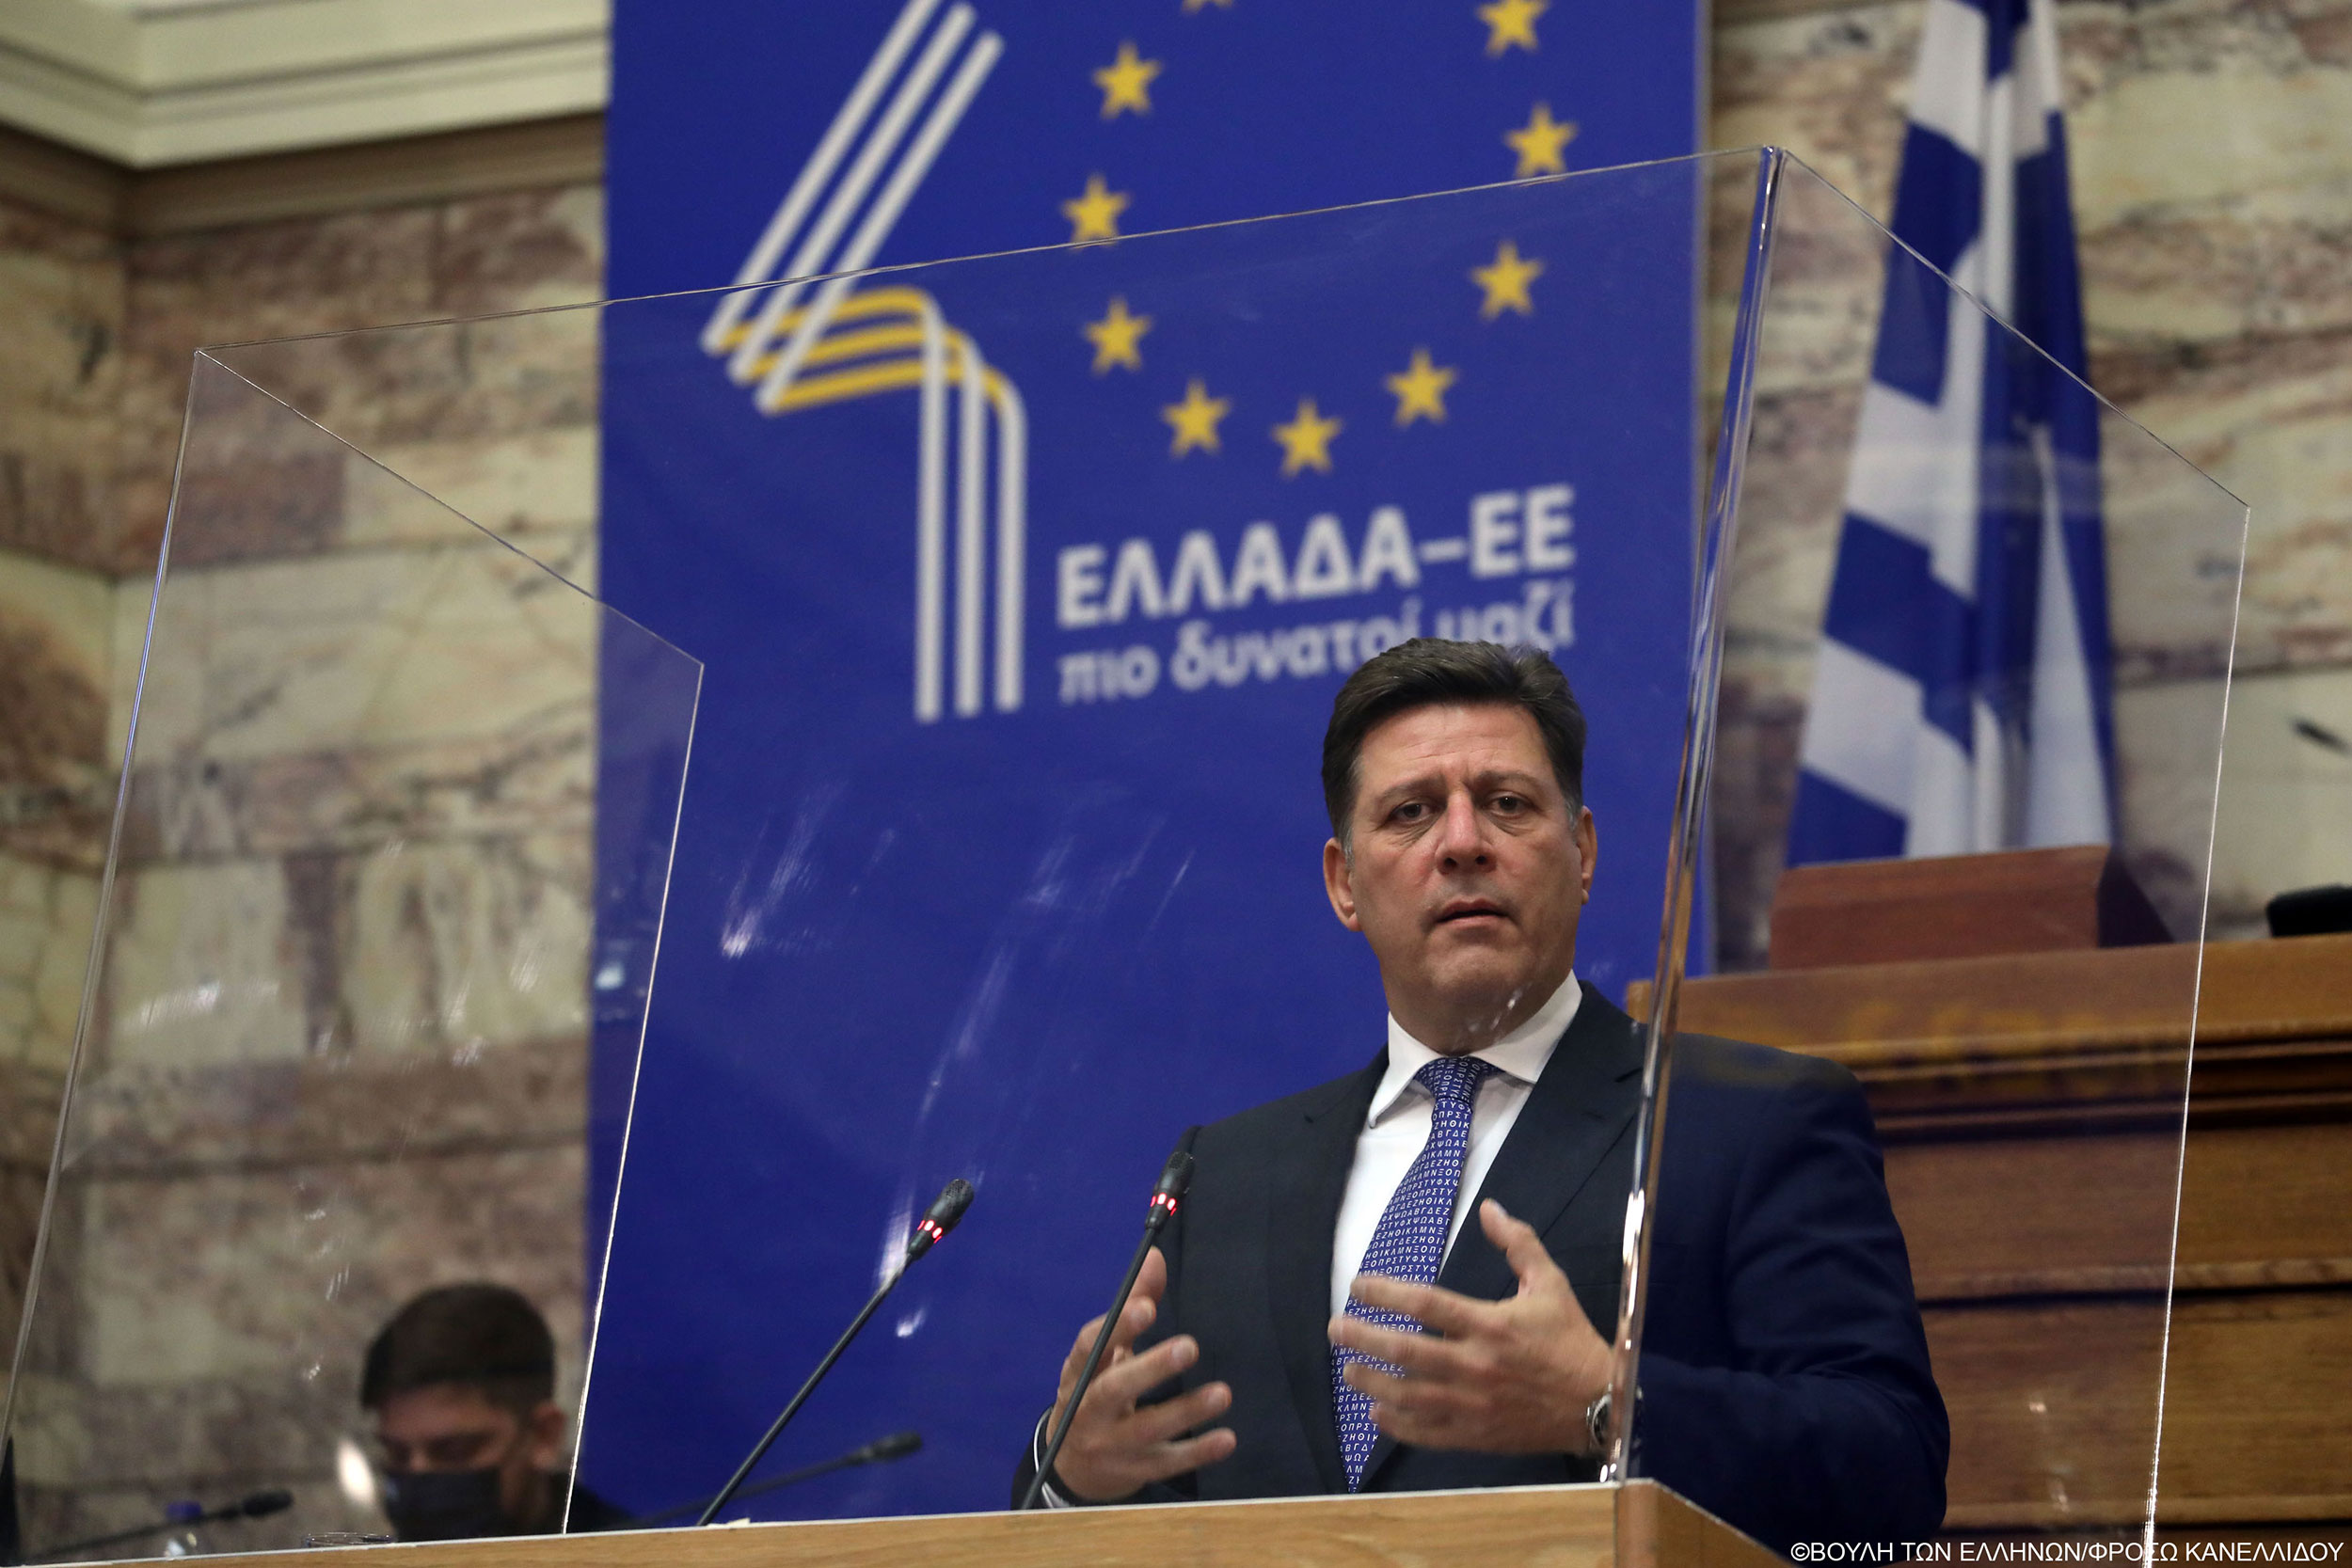 Μιλτιάδης Βαρβιτσιώτης στην επετειακή εκδήλωση «Ελλάδα-ΕΕ, 40χρόνια πιο δυνατοί μαζί»: Κομβικός ο ρόλος του «εθνάρχη» Κωνσταντίνου Καραμανλή